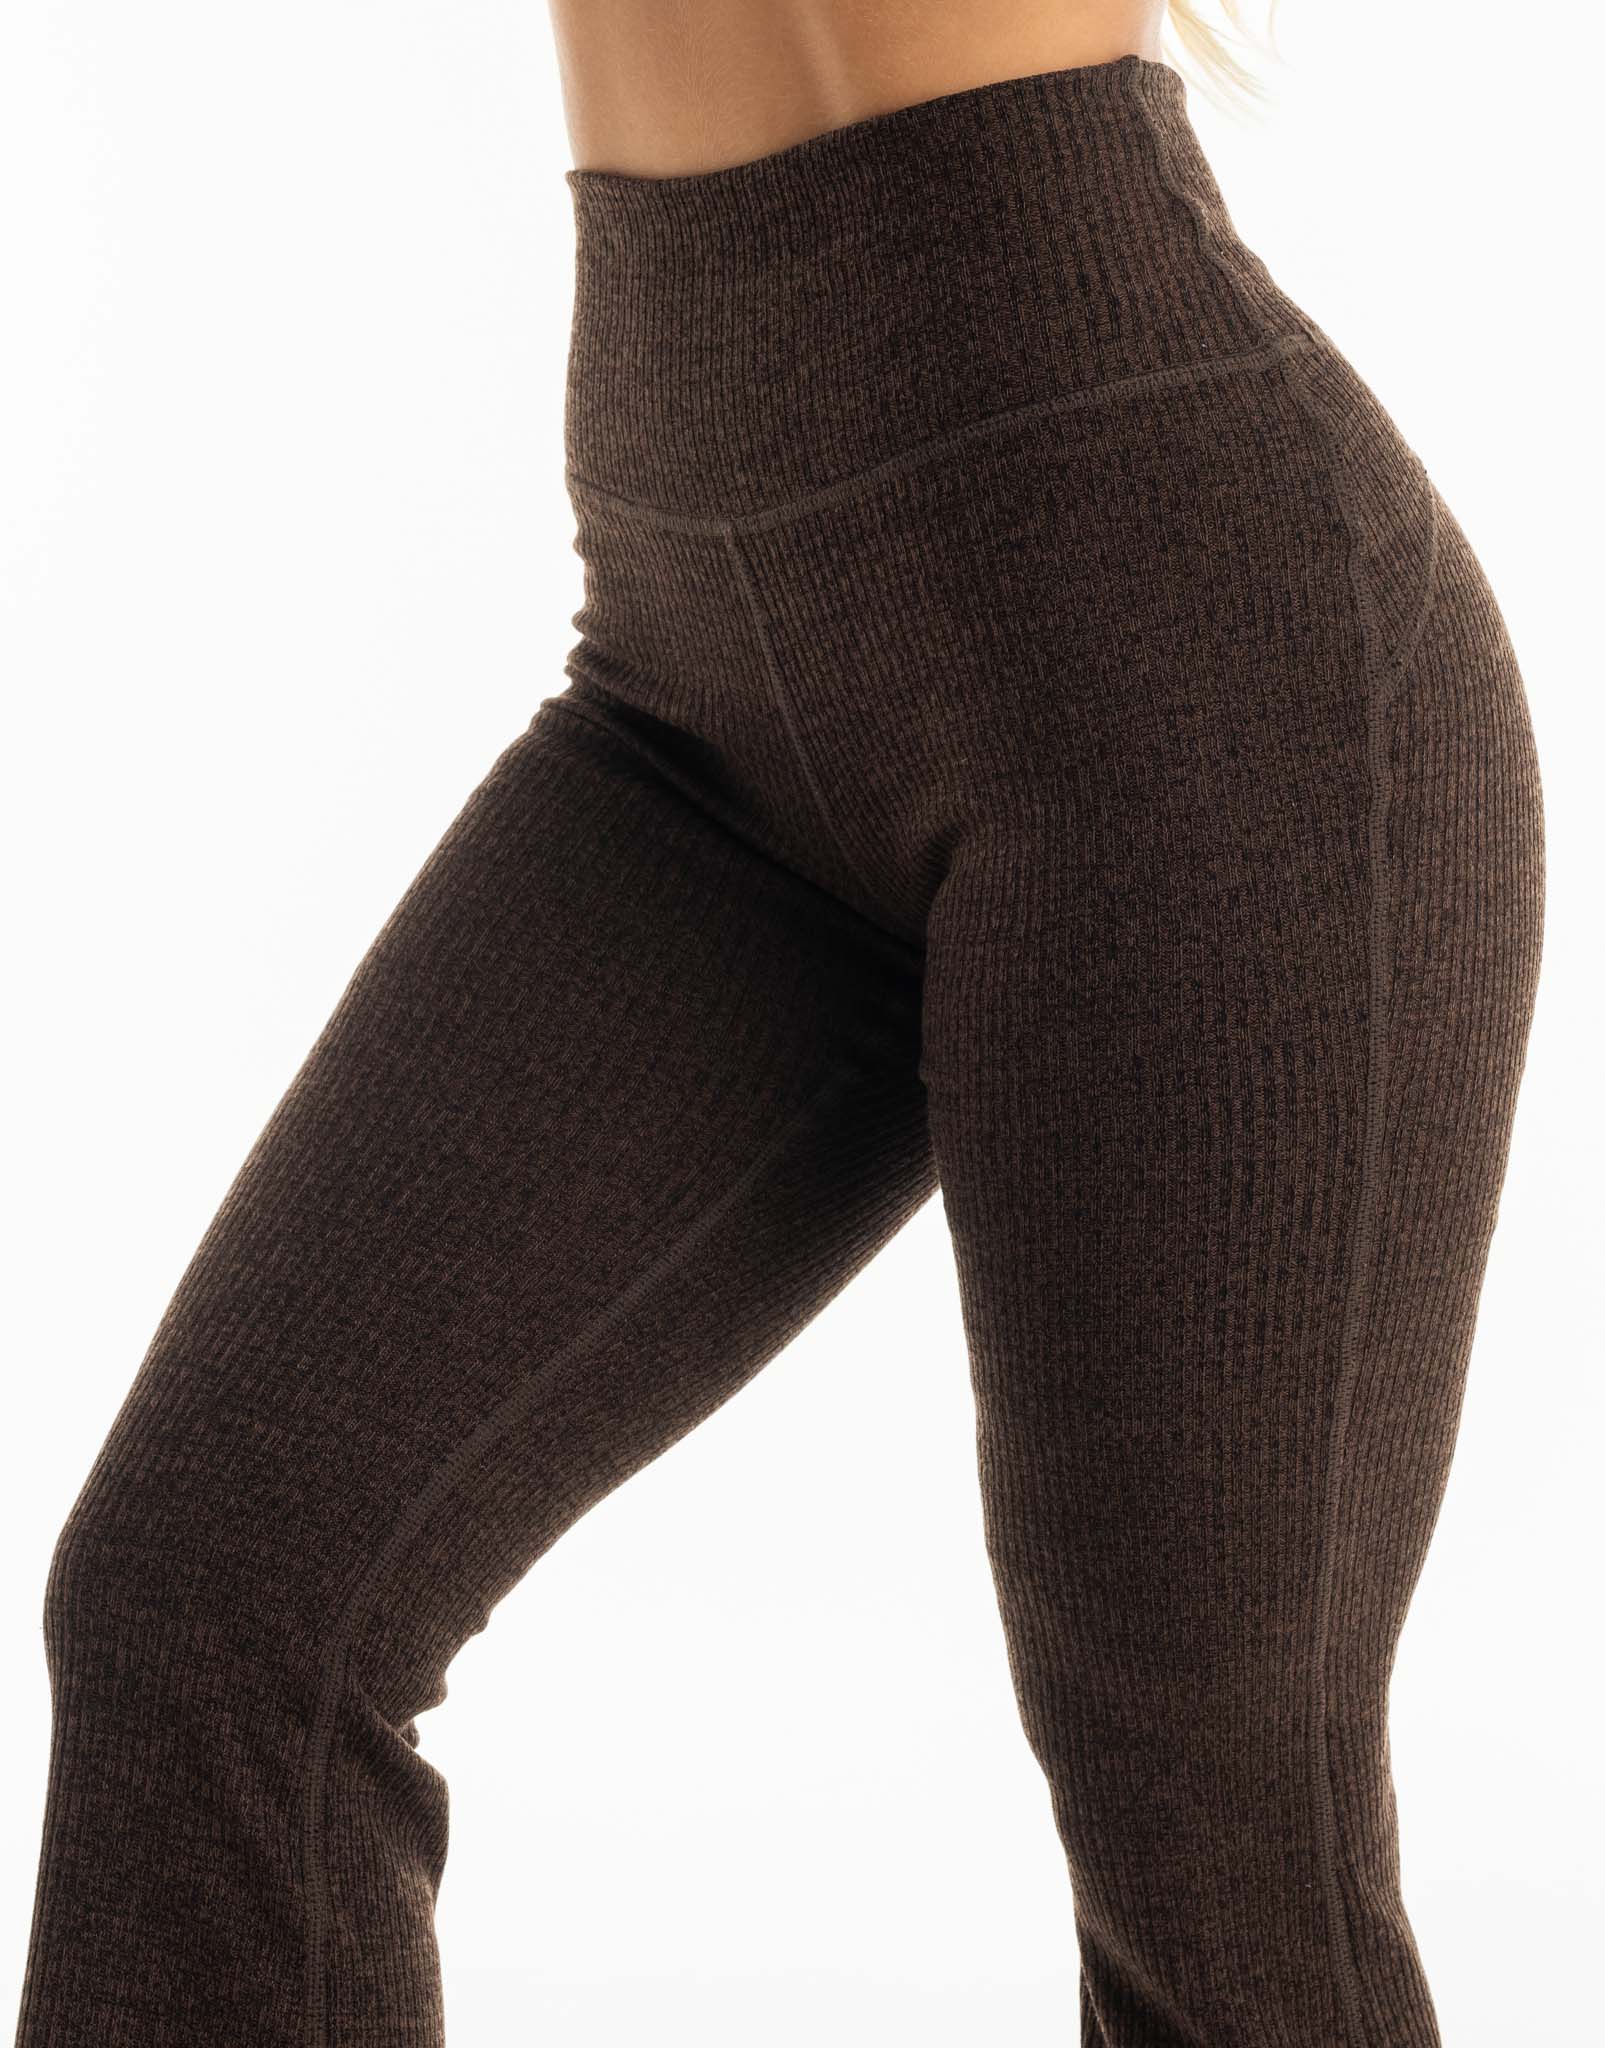 Comfort Flare Pants - Fudge Brown